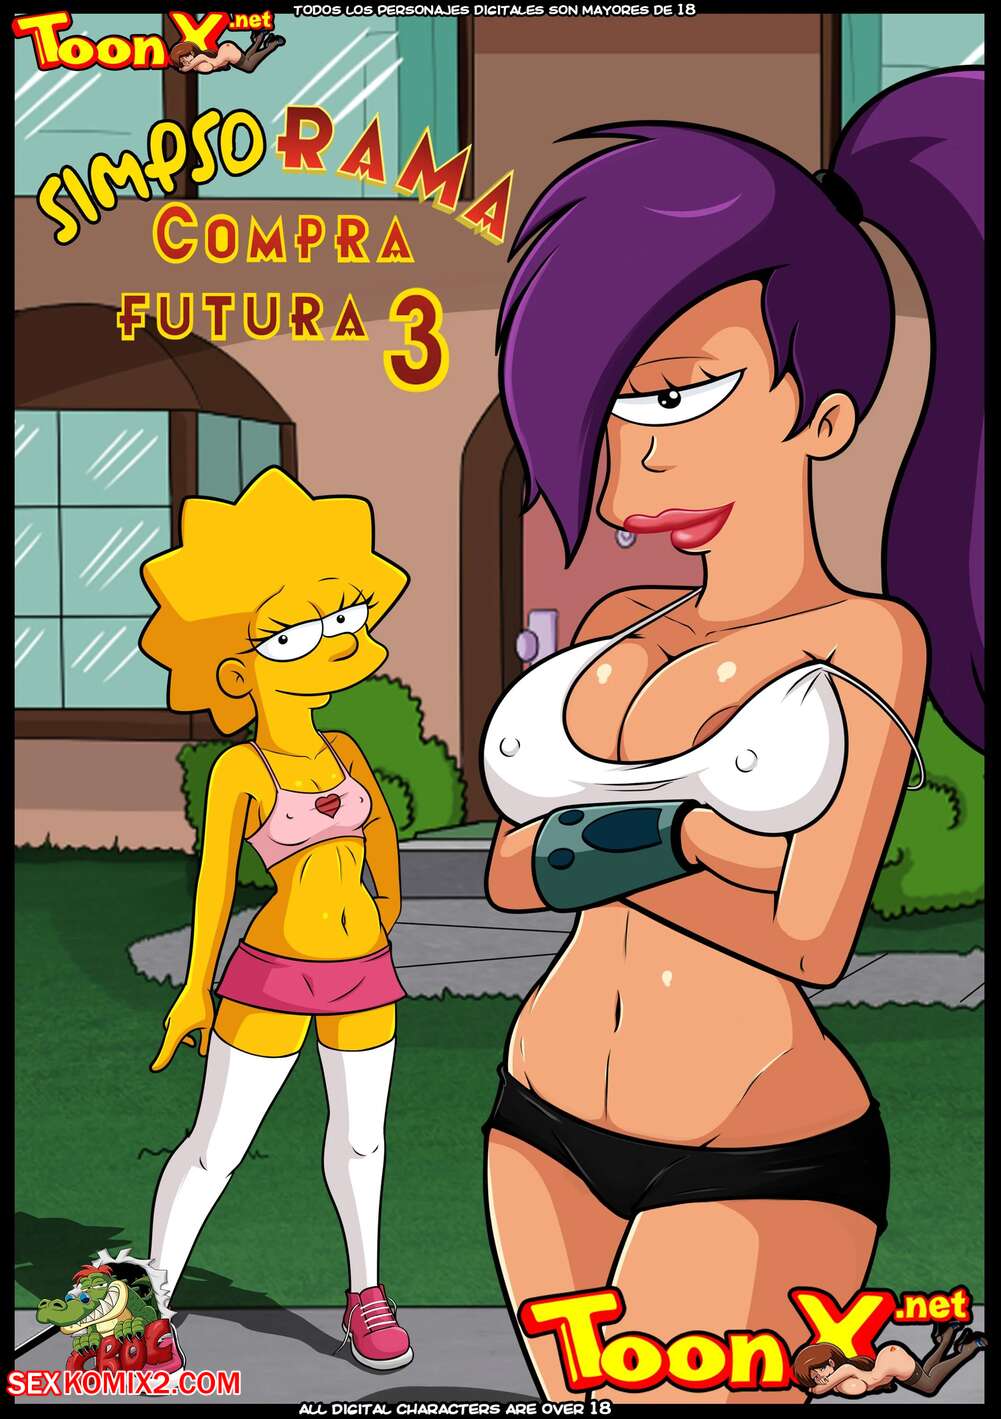 âœ…ï¸ Porn comic SimpsoRama. Chapter 3. The Simpsons , Futurama. Croc. Sex  comic beauty woke up | Porn comics in English for adults only |  sexkomix2.com